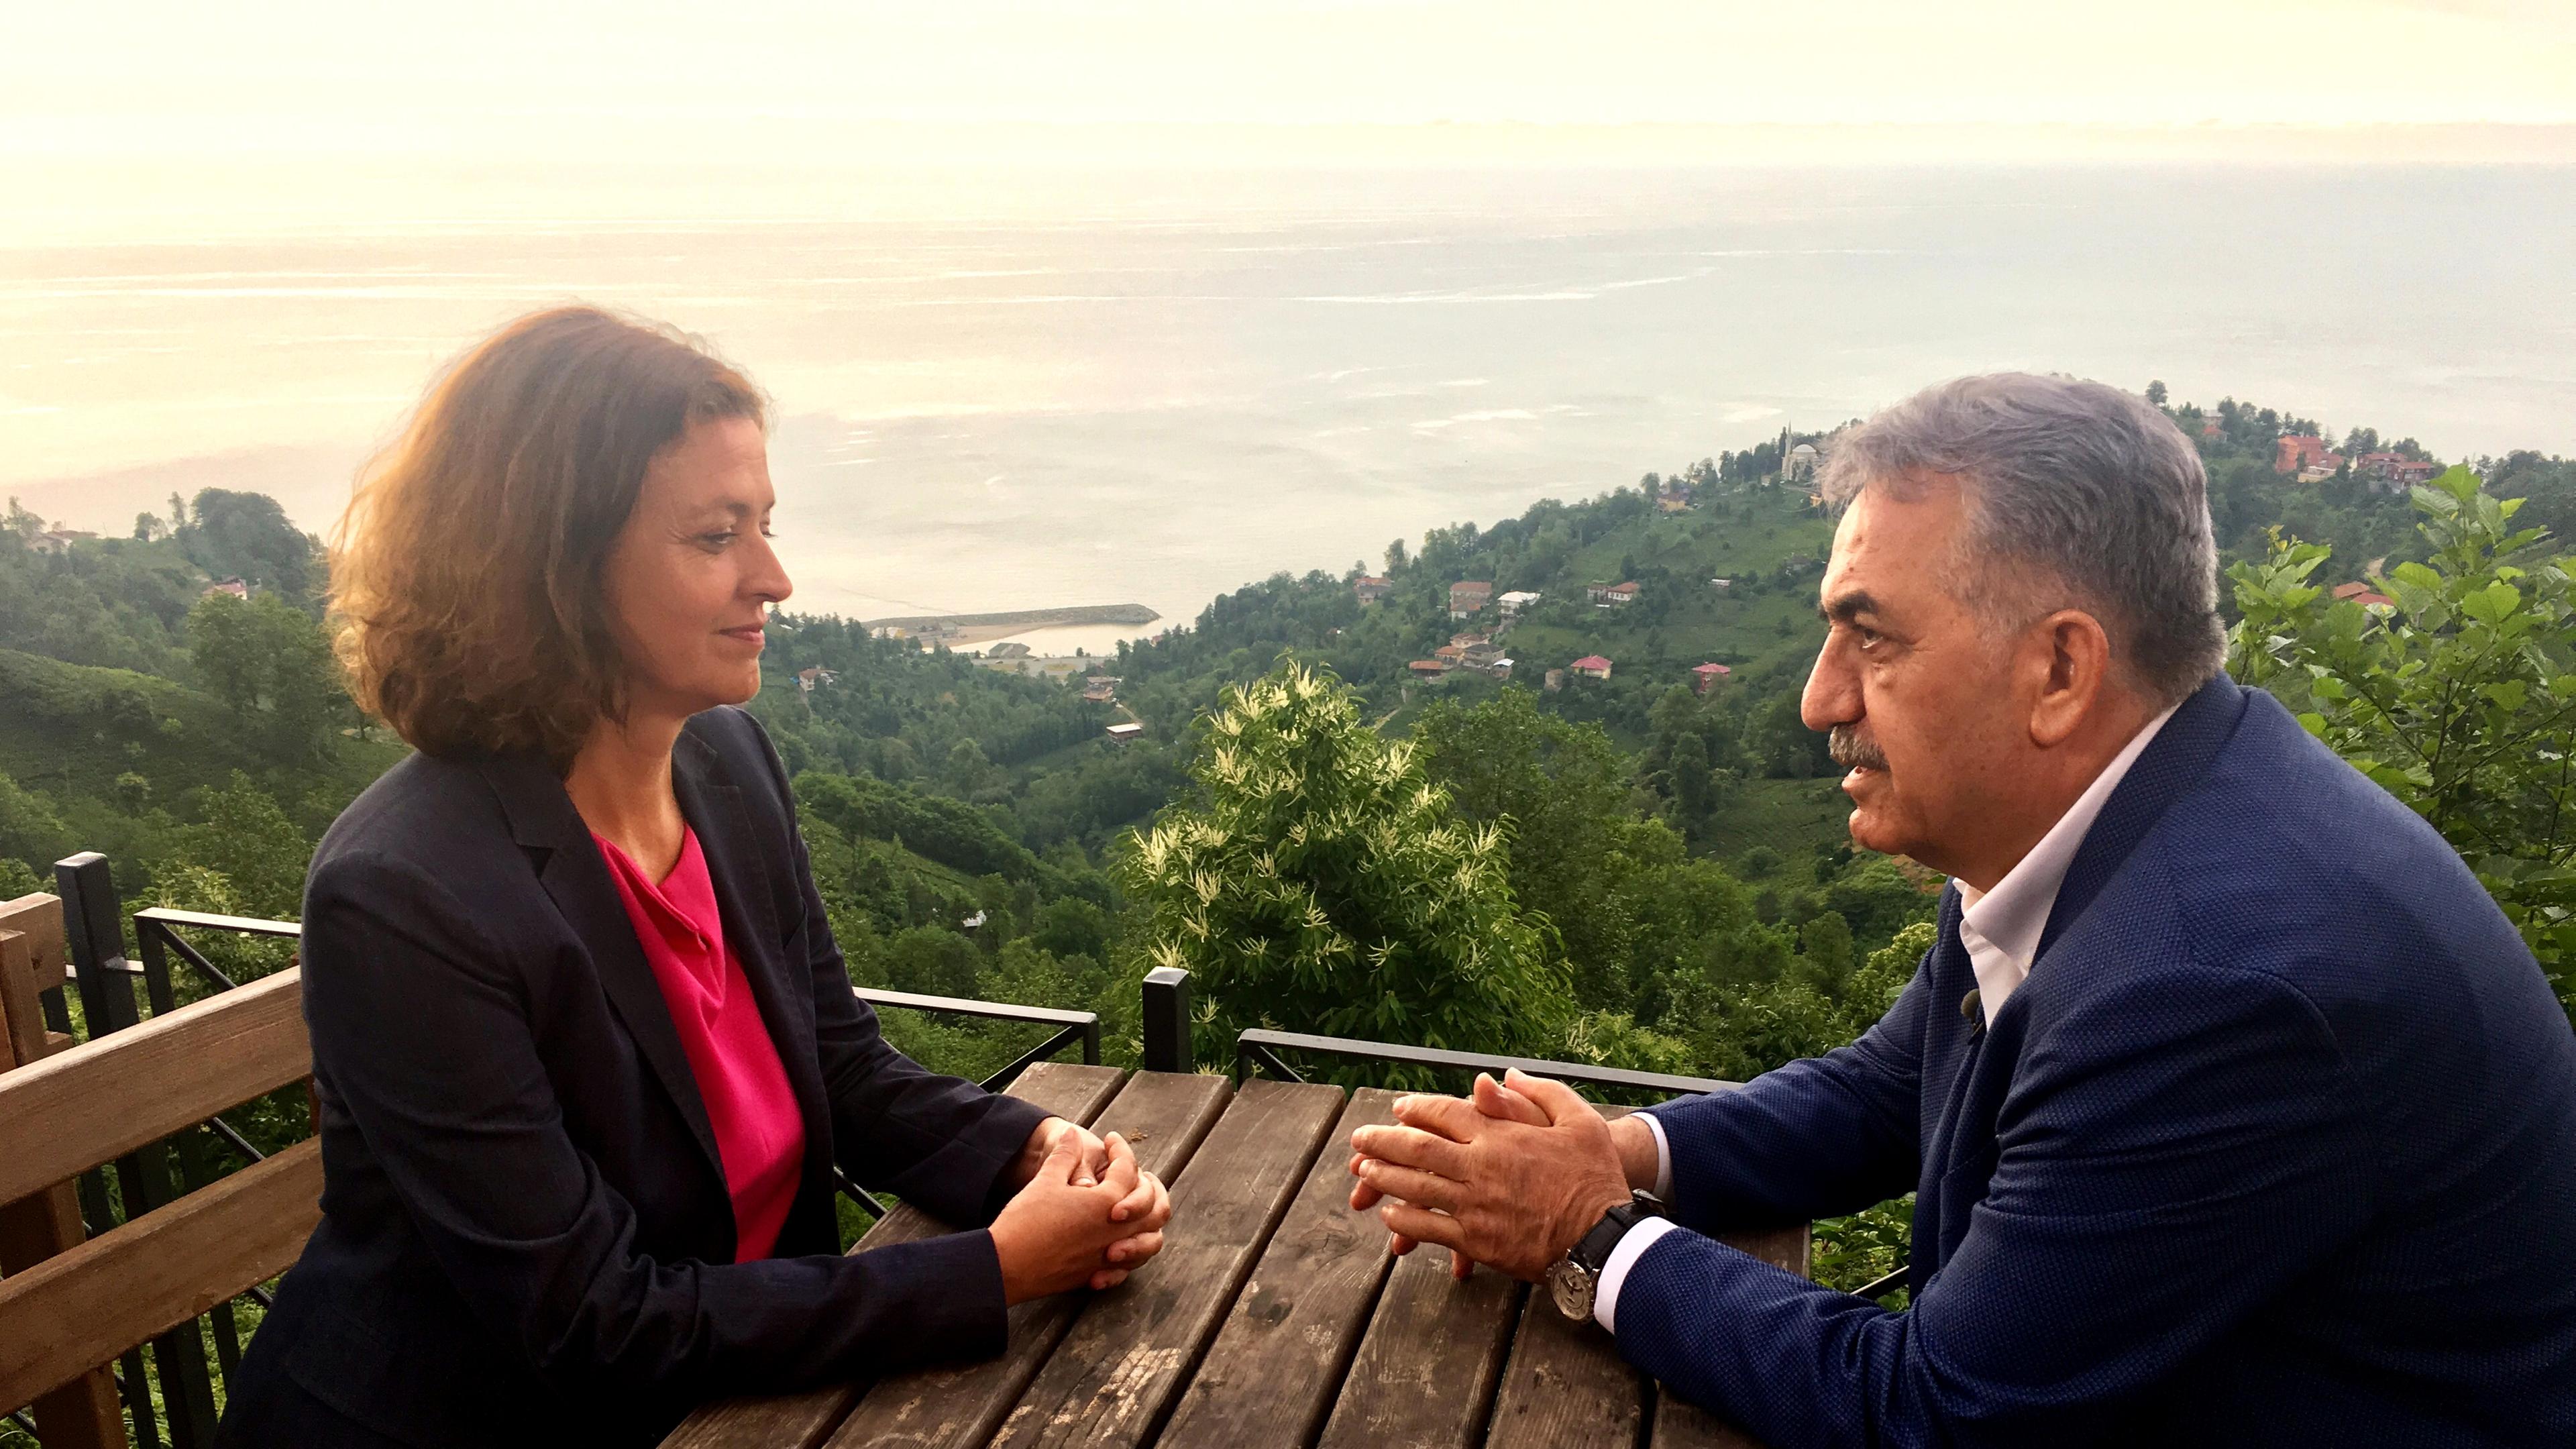 Antje Pieper im exklusiven ZDF-Interview mit dem stellvertretendem Vorsitzenden AKP, Hayati Yazici